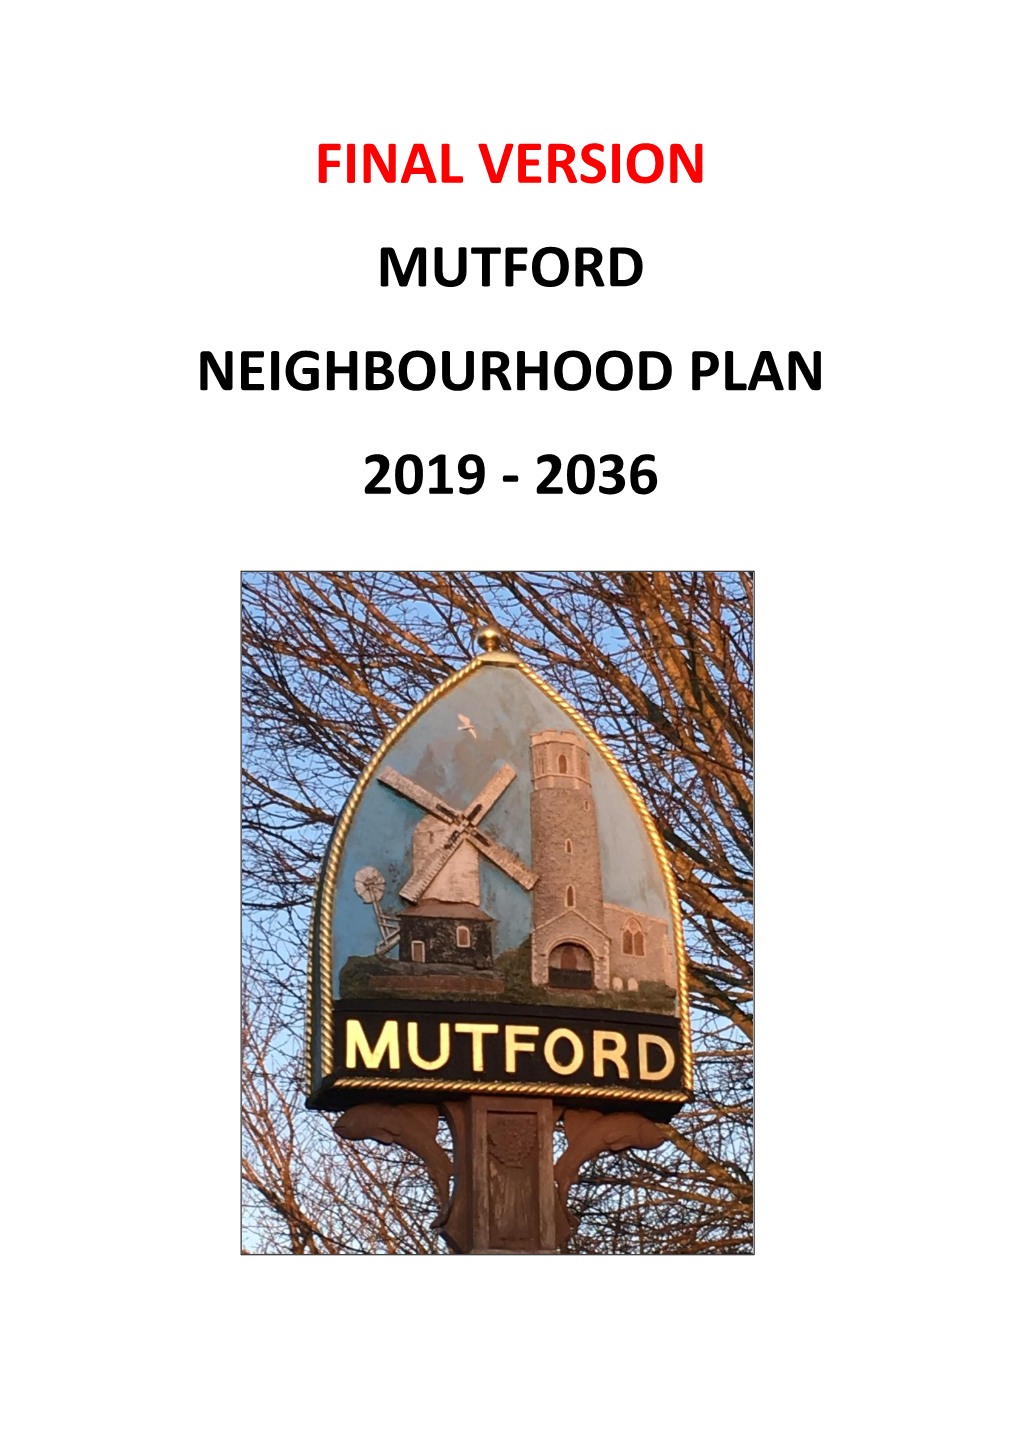 Final Version Mutford Neighbourhood Plan 2019 - 2036